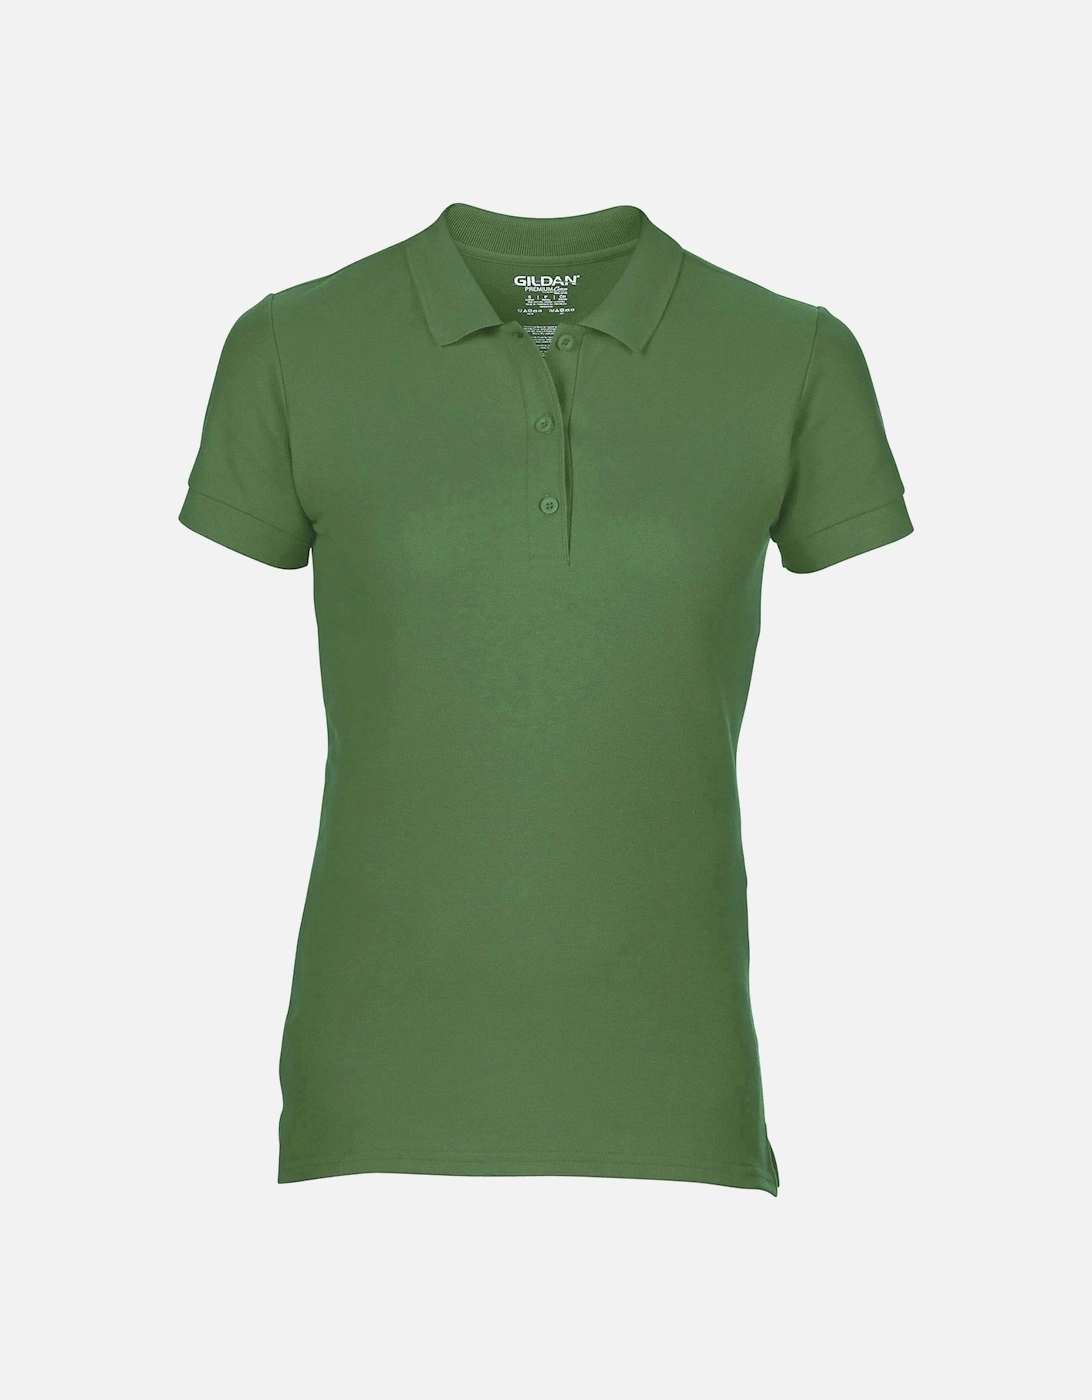 Womens/Ladies Premium Cotton Sport Double Pique Polo Shirt, 4 of 3